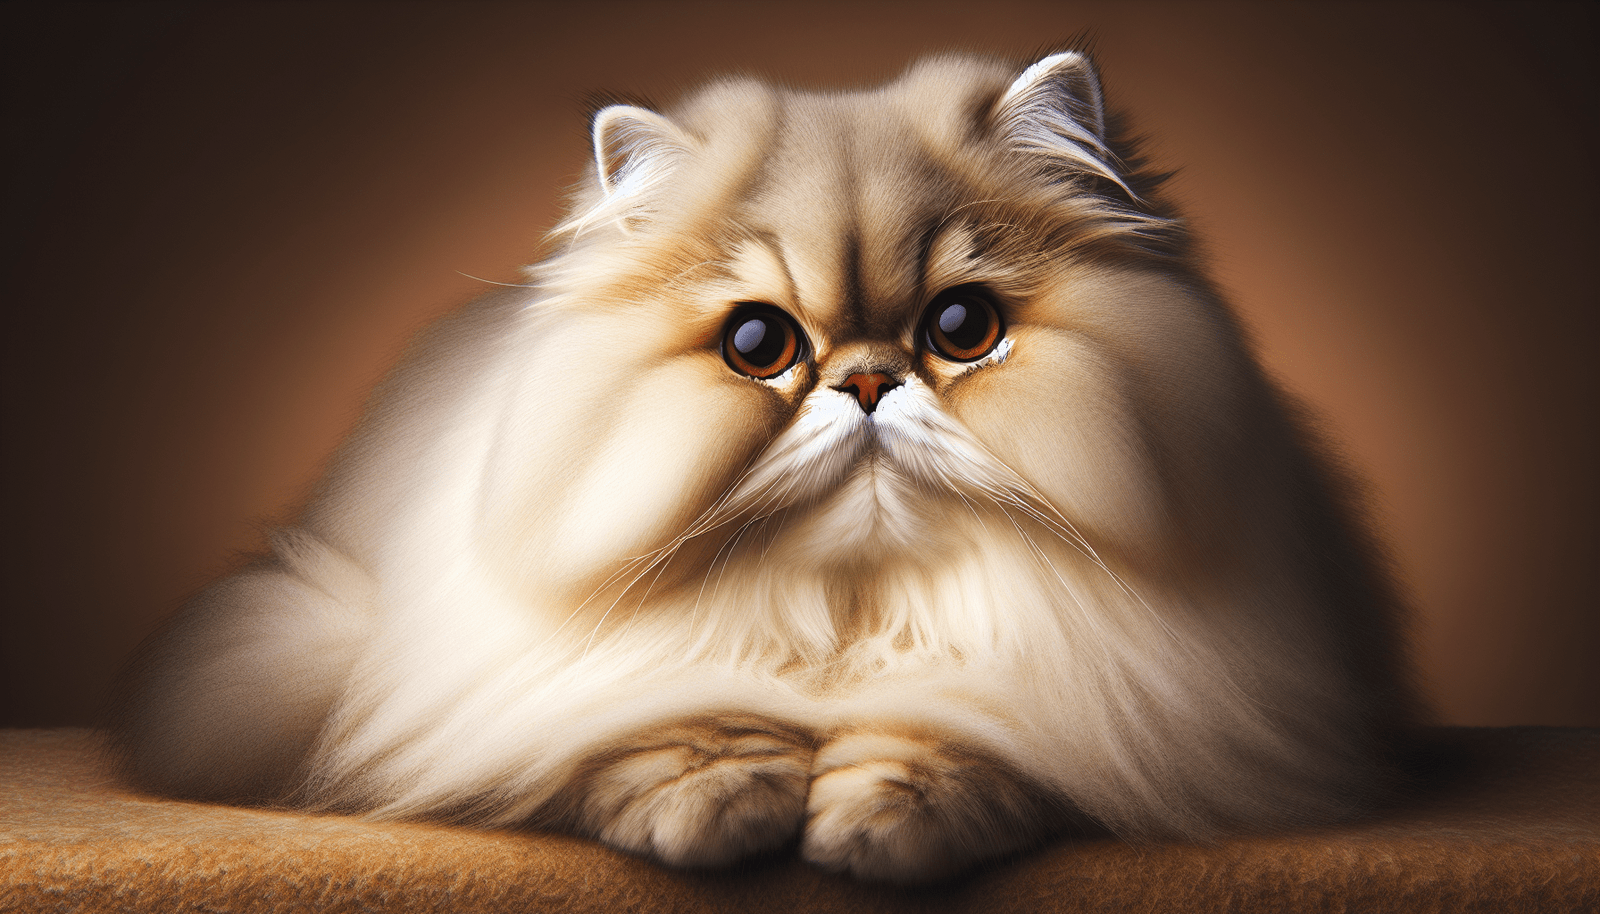 10 Notable Characteristics of a Persian Cat